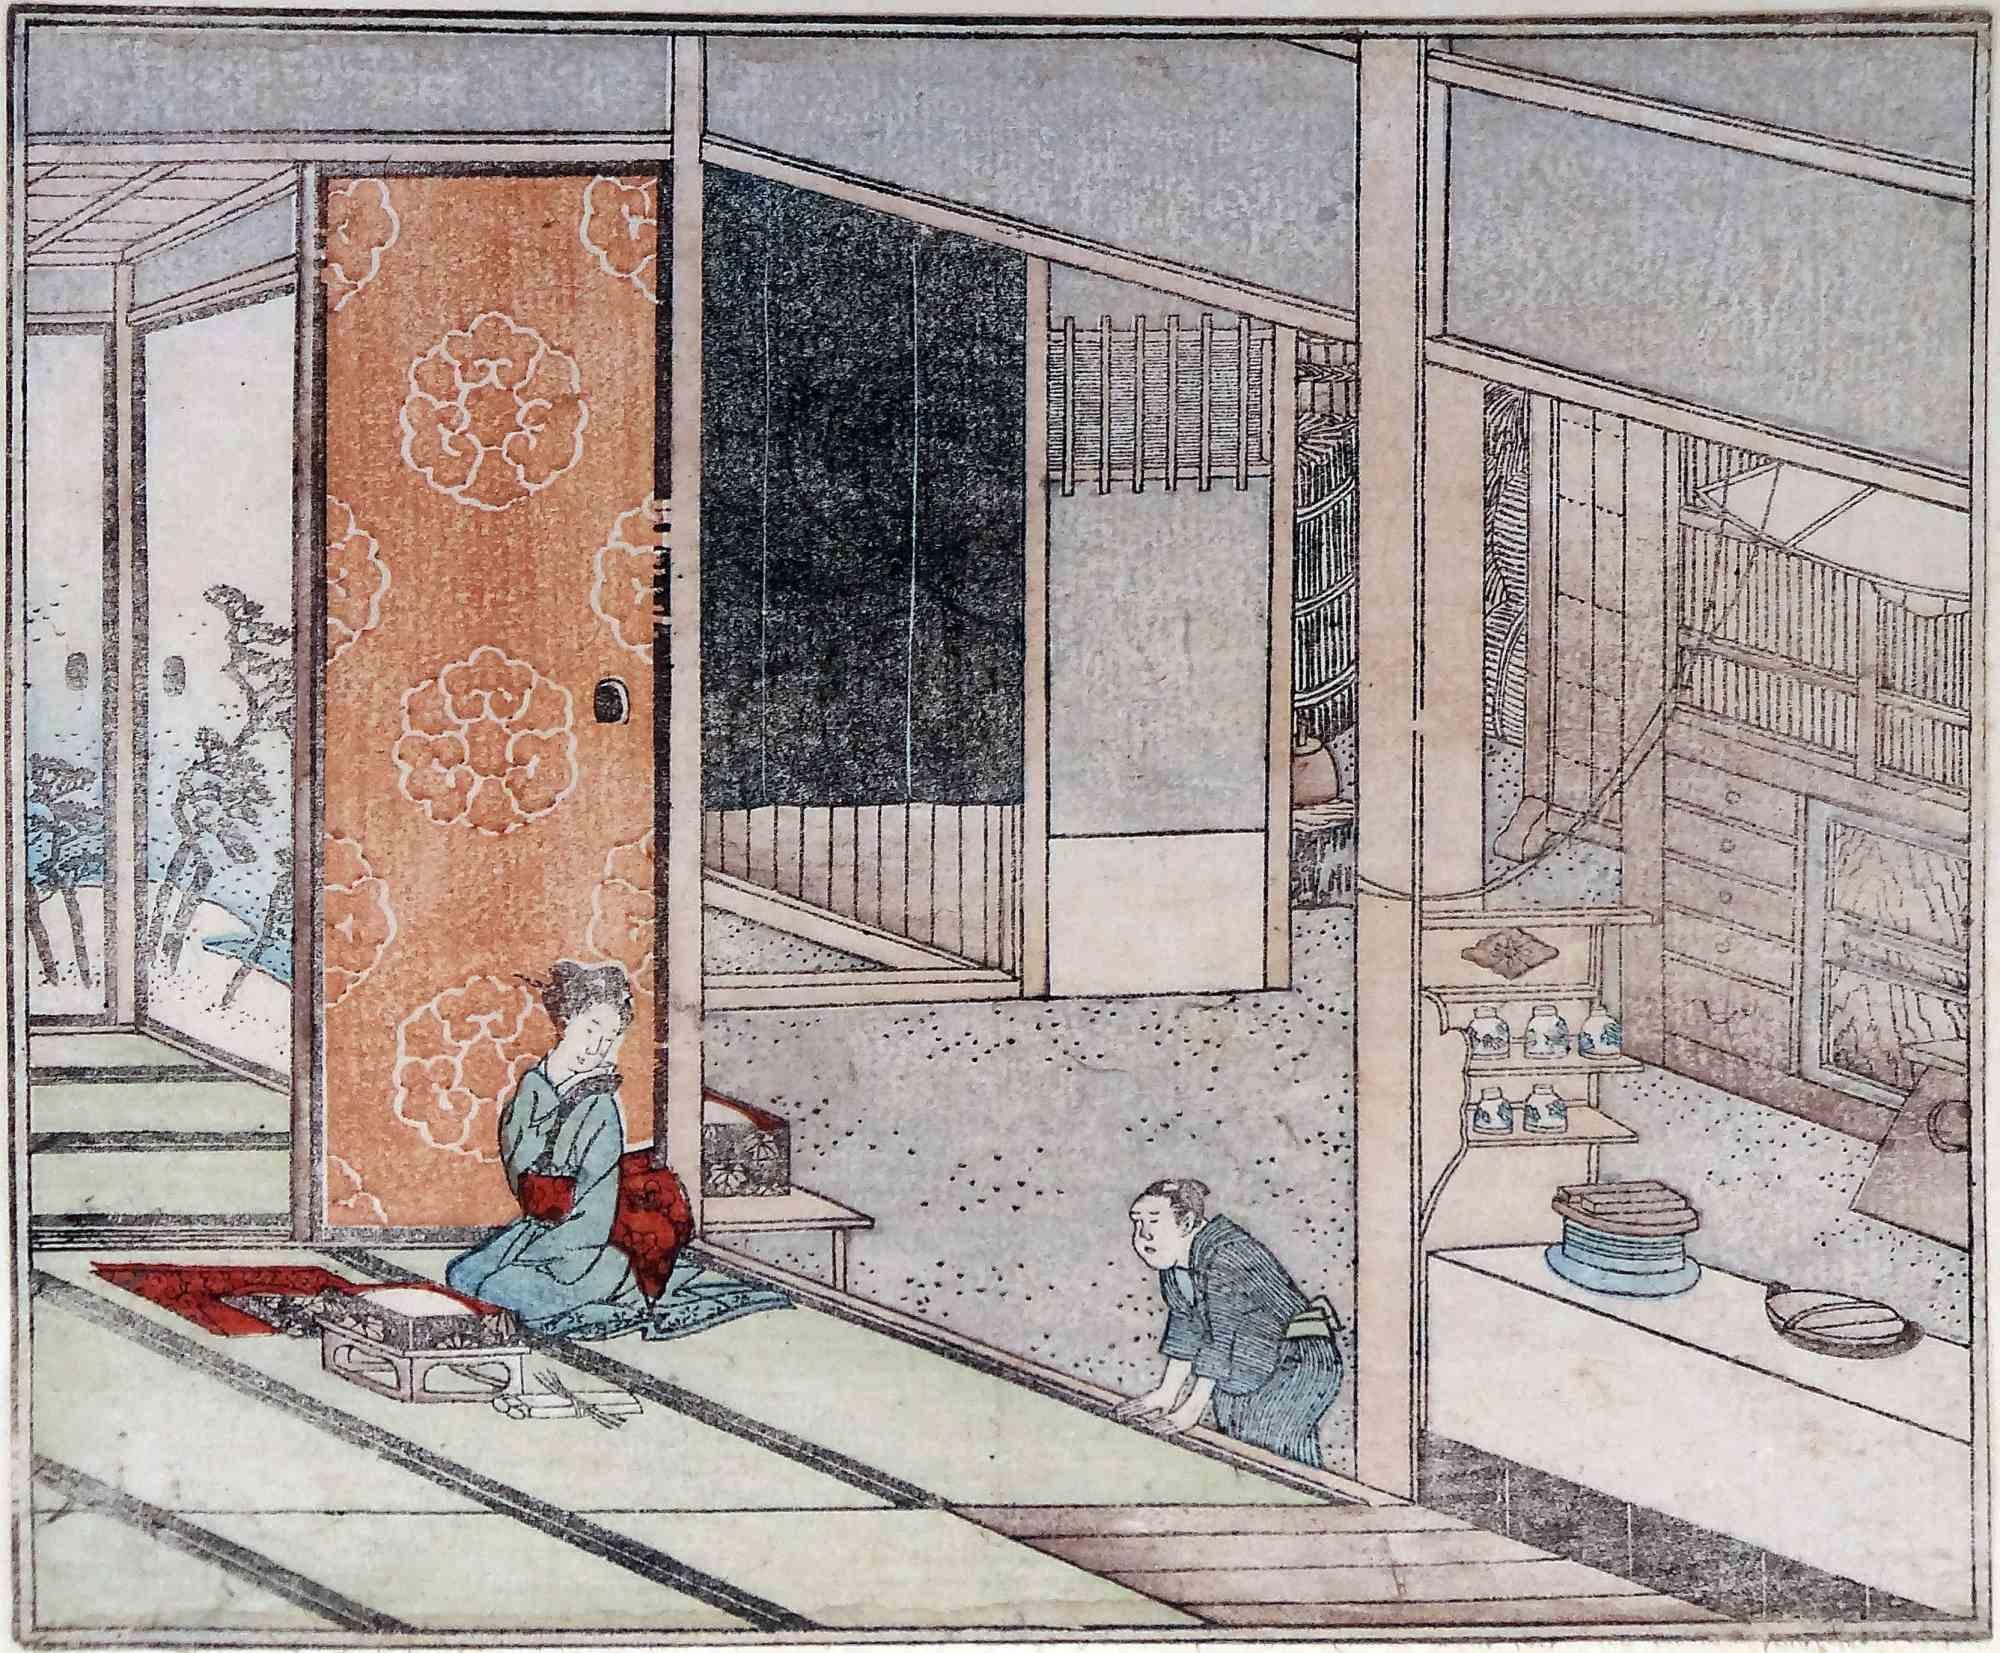 Interieurszene mit traditionellem Service von Utagawa Hiroshige – 19. Jahrhundert  Jahrhundert